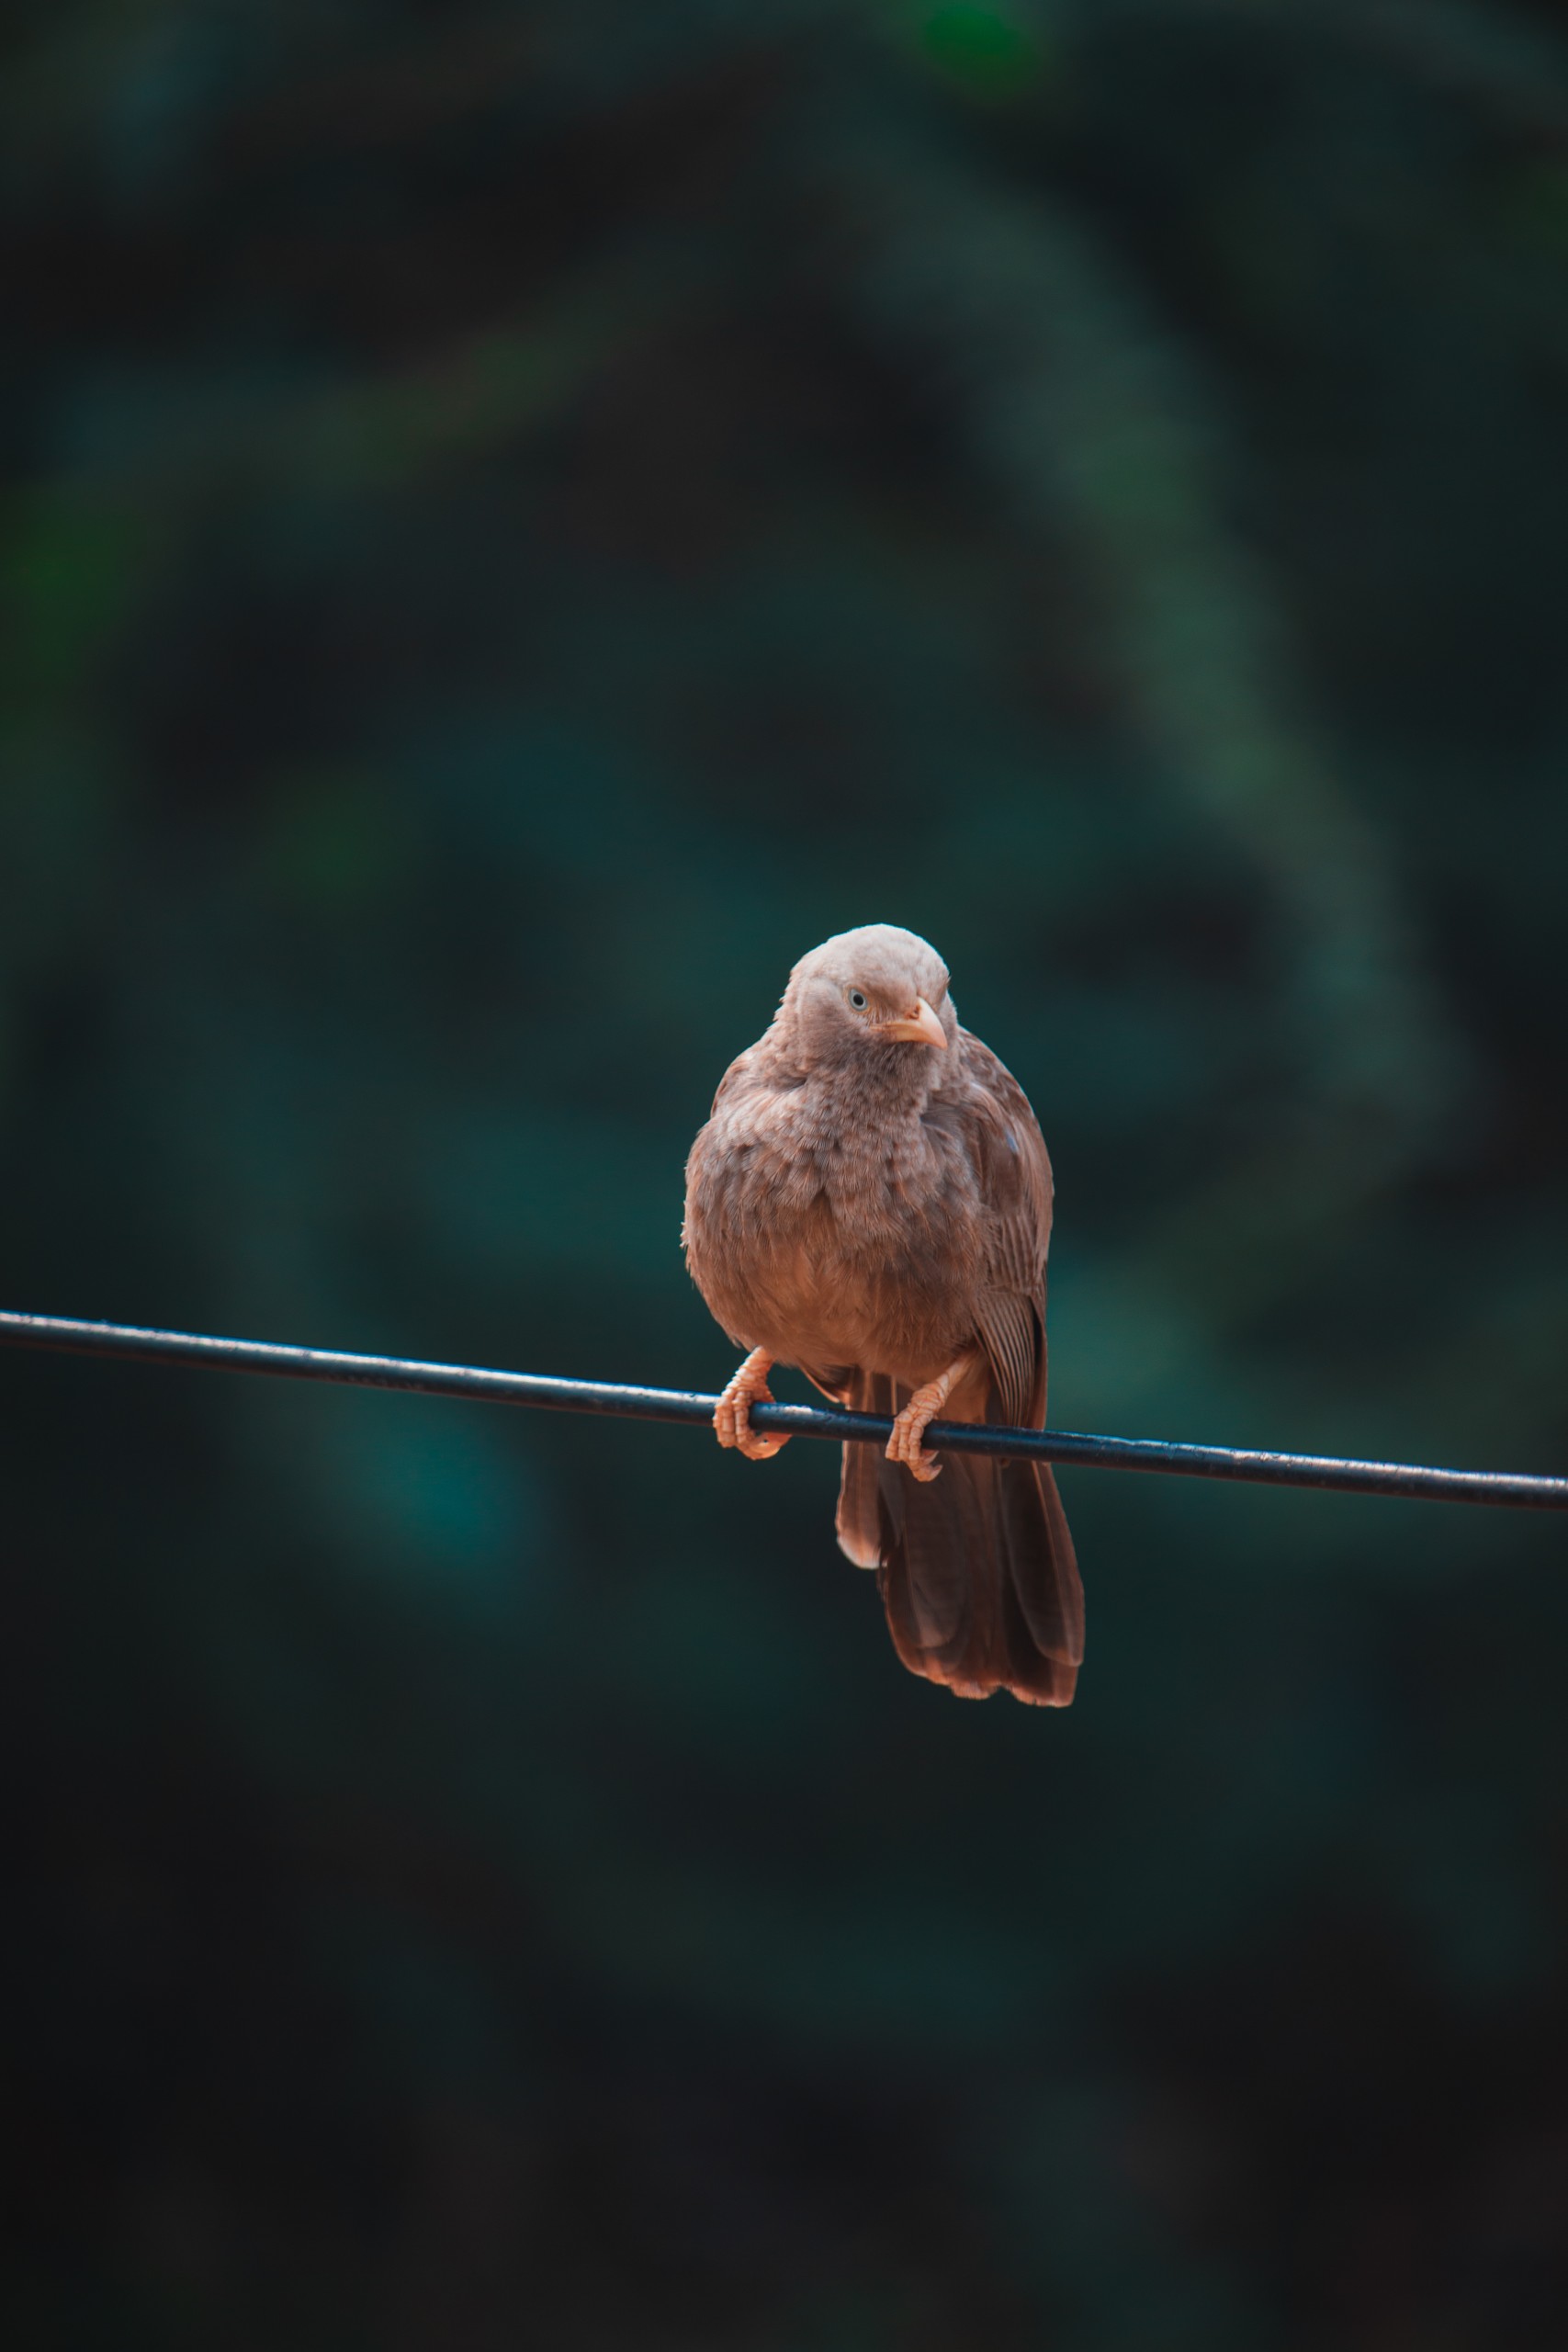 Golden bird on a wire